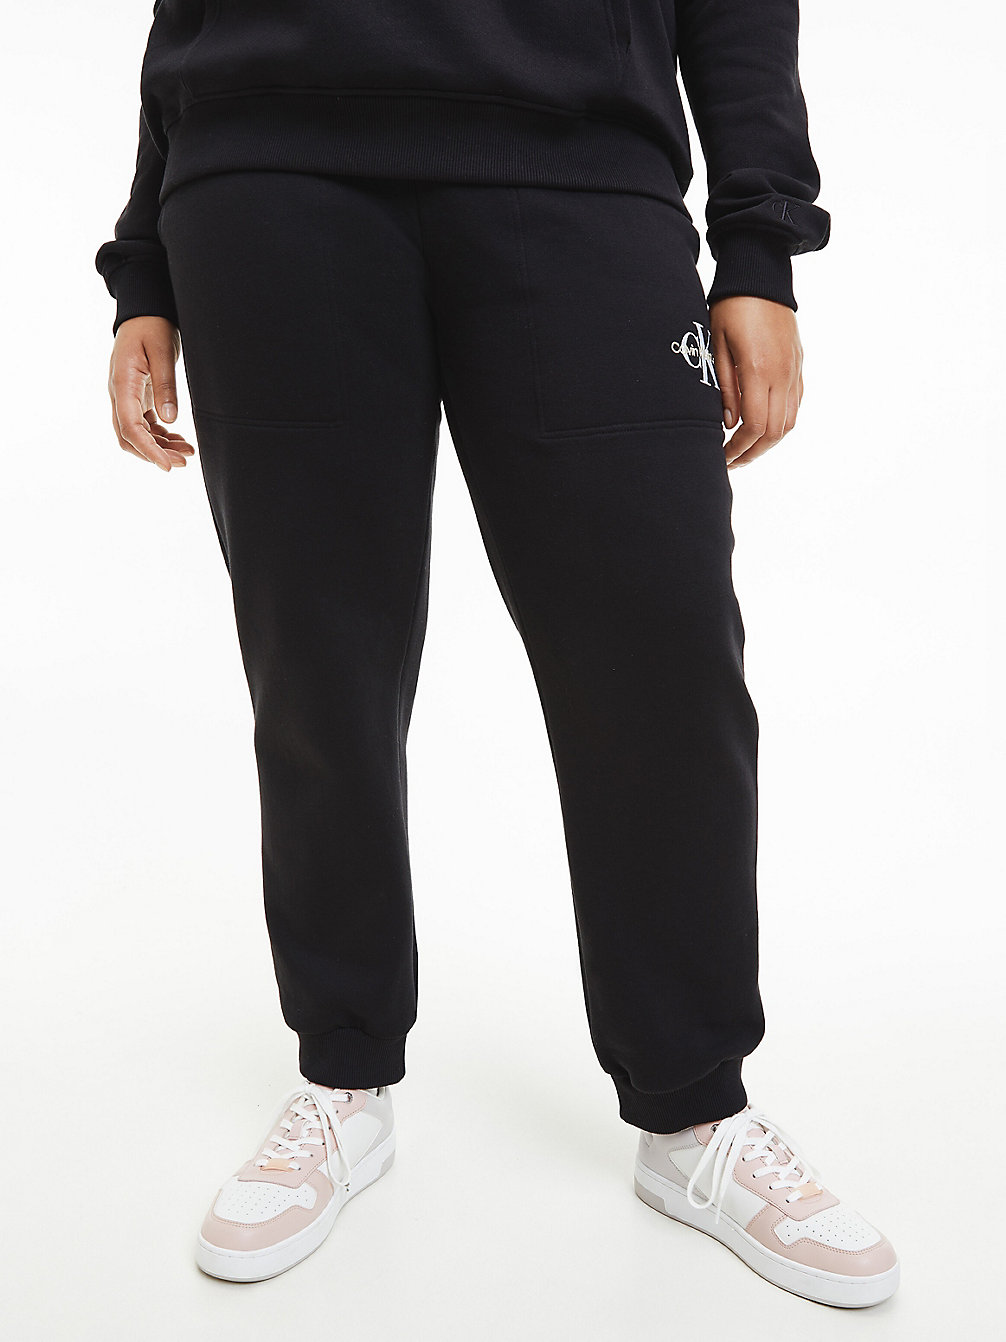 CK BLACK Pantalon De Jogging Grande Taille Avec Monogramme undefined femmes Calvin Klein